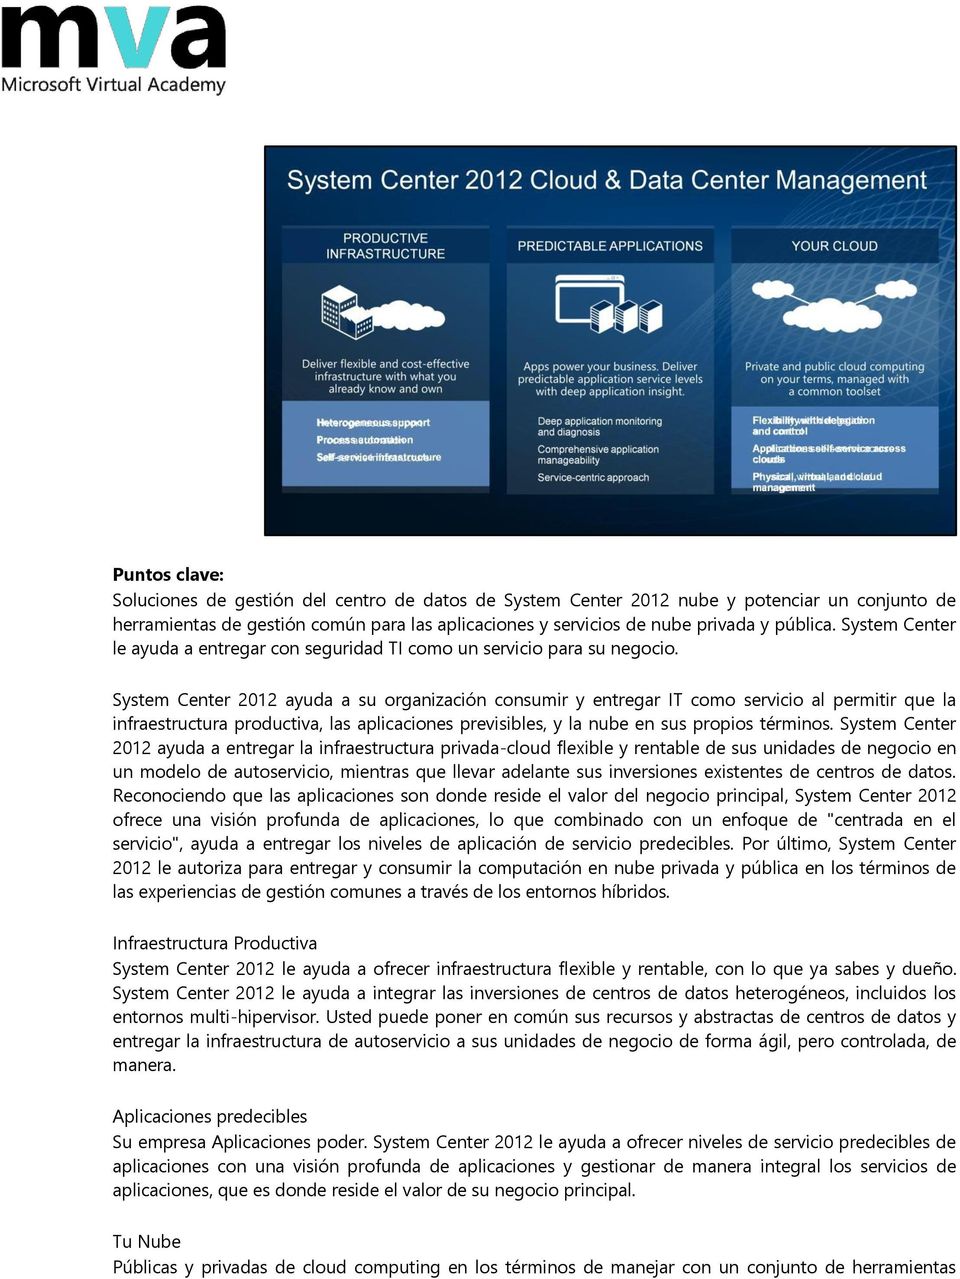 System Center 2012 ayuda a su organización consumir y entregar IT como servicio al permitir que la infraestructura productiva, las aplicaciones previsibles, y la nube en sus propios términos.